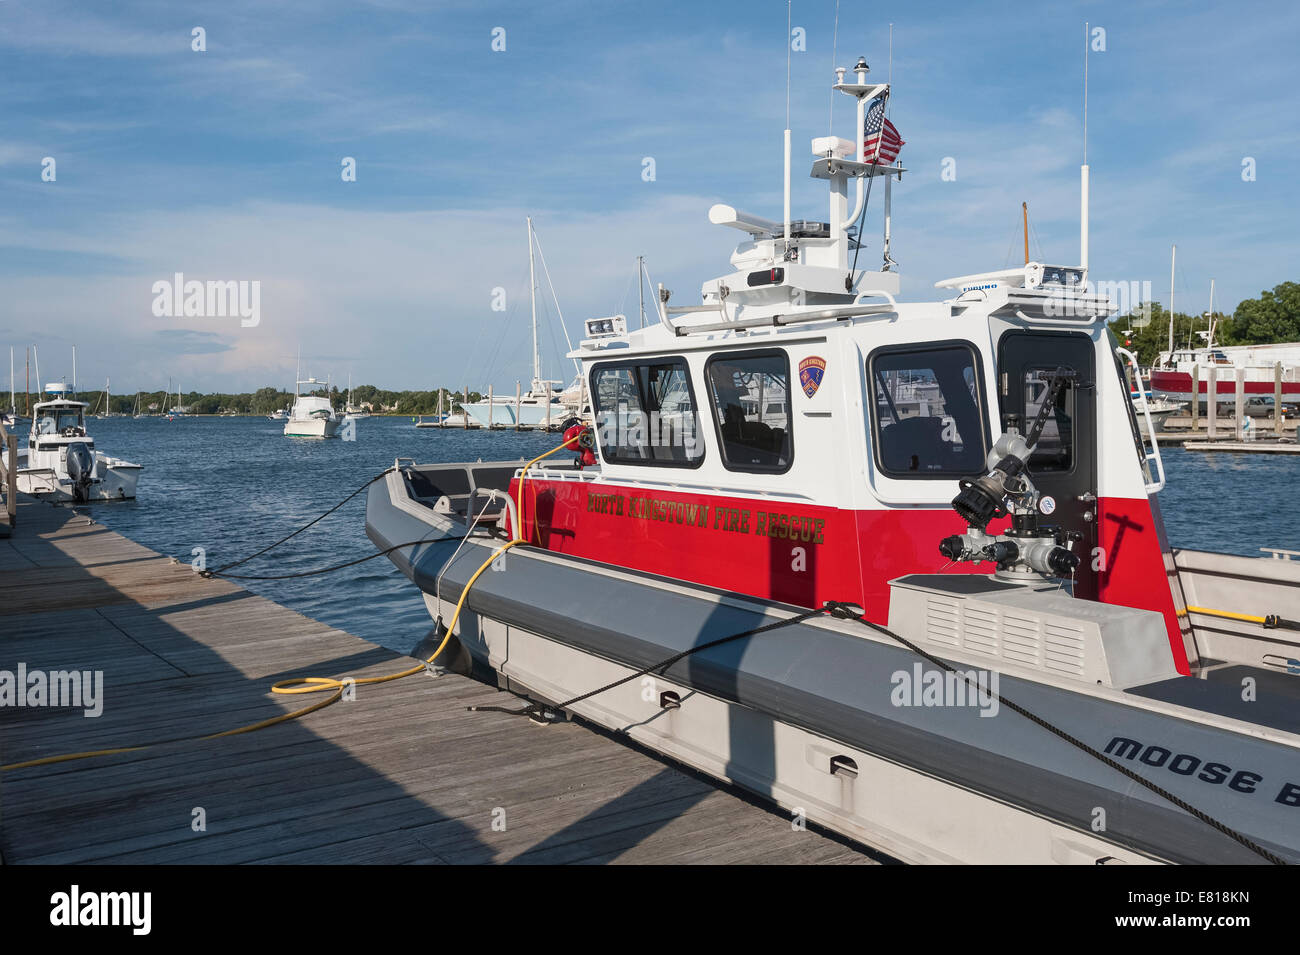 Le North Kingstown secours incendie Bateau amarré à la Marina de Wickford Rhode Island USA Banque D'Images